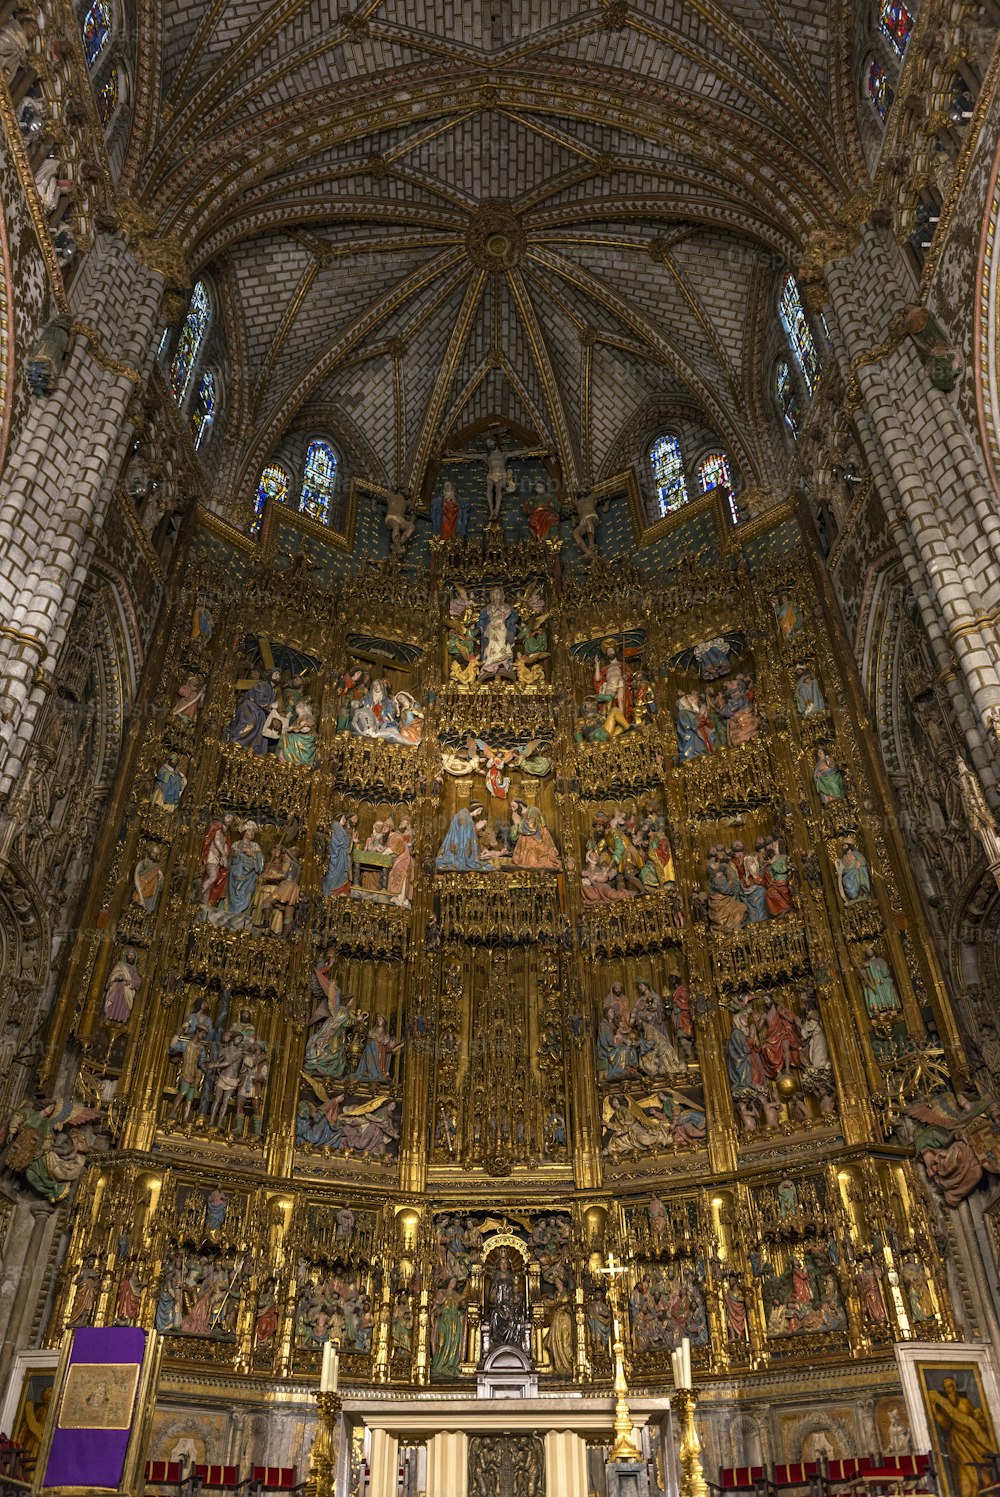 톨레도 대성당 (톨레도의 성모 마리아 영장류 대성당)의 테이블과 높은 제단의 내부 전망은 매우 화려한 고딕 양식의 제단이며이 예술적 스타일의 마지막 예 중 하나입니다. 톨레도 대성당은 스페인의 3 개의 13 세기 고딕 양식의 대성당 중 하나이며 스페인 고딕 양식의 대작으로 간주됩니다.